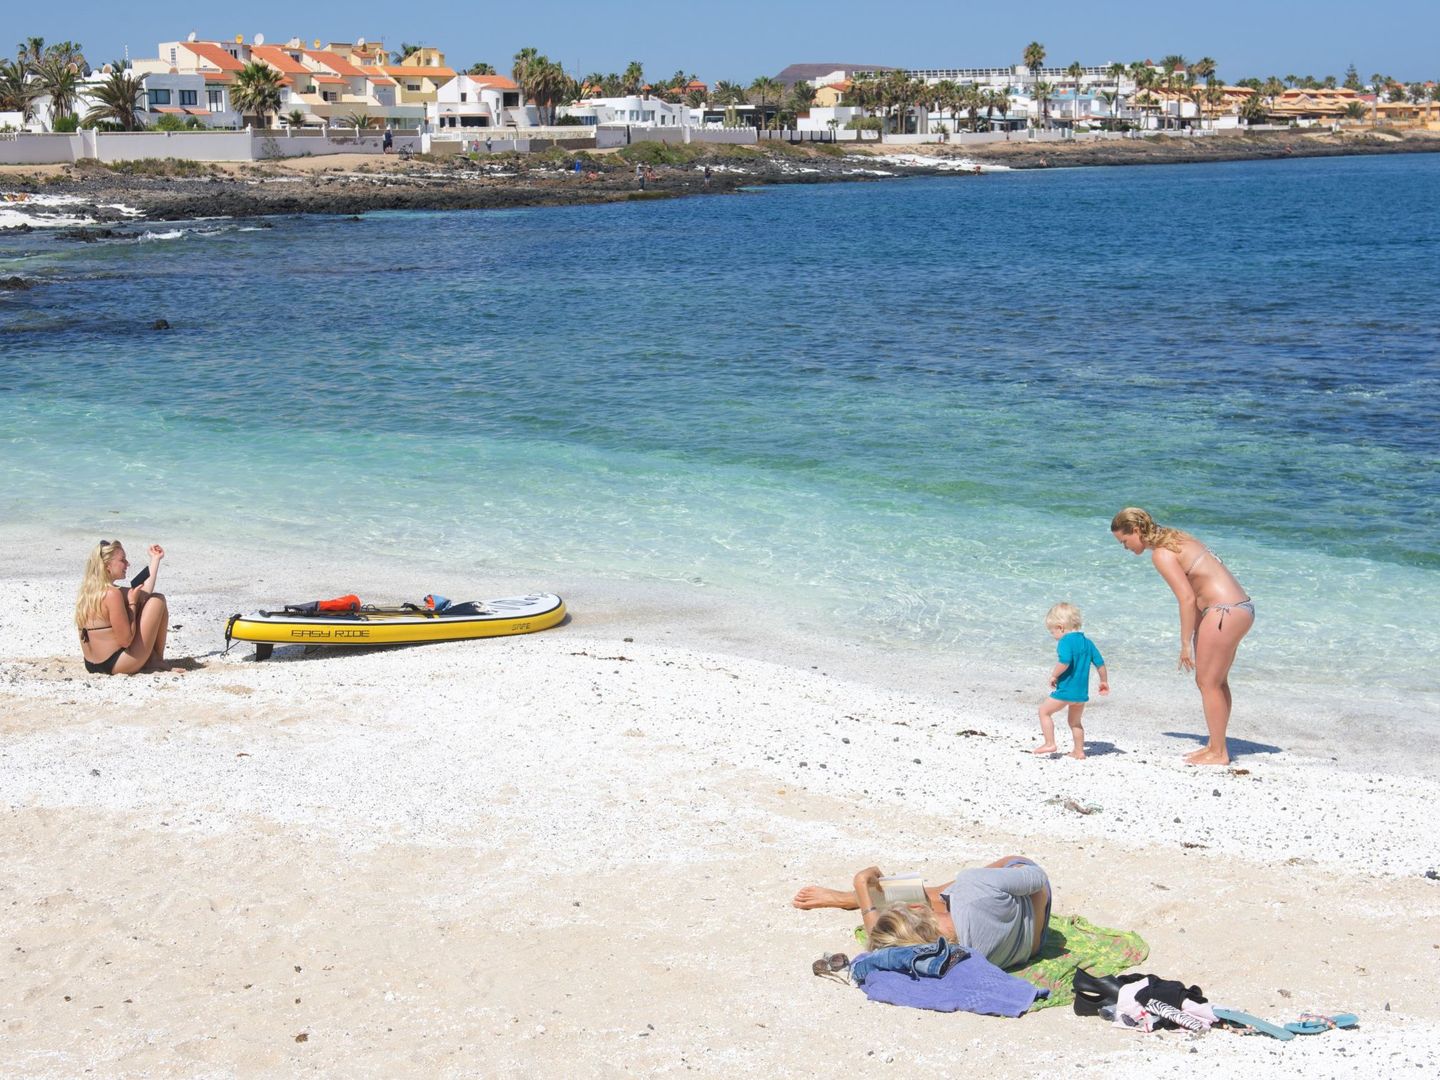 Turistas, pese a la pandemia, en las playas de Fuerteventura, donde el turismo es una importante vía de ingresos. (EFE)